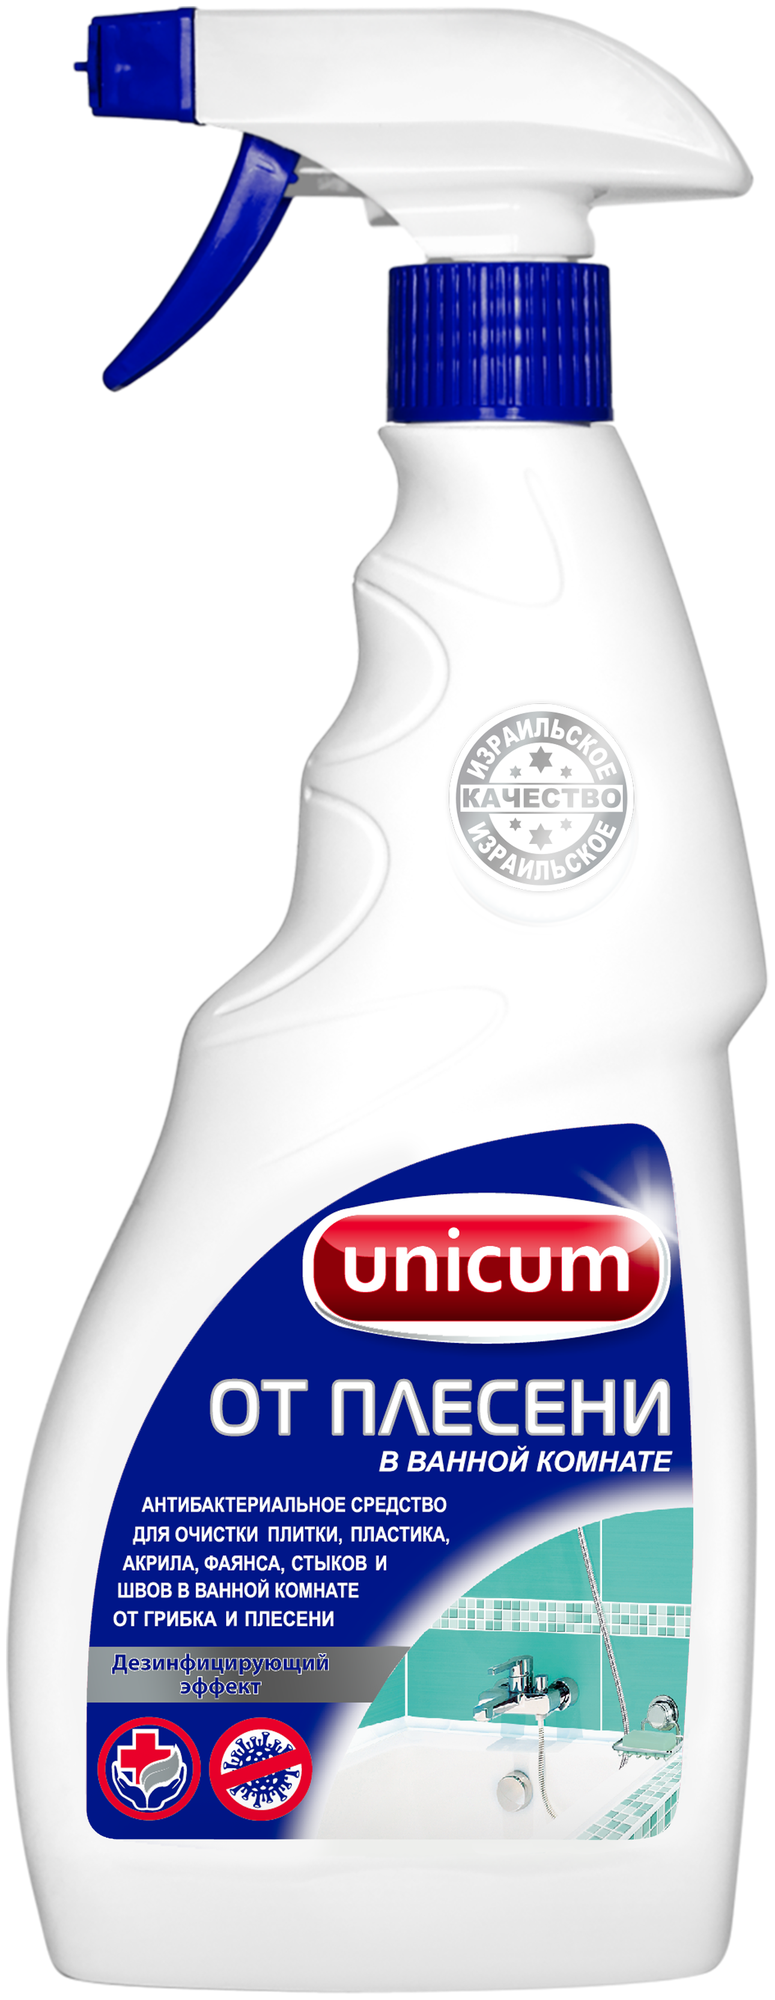 Unicum спрей для удаления грибка и плесени, 0.5 л